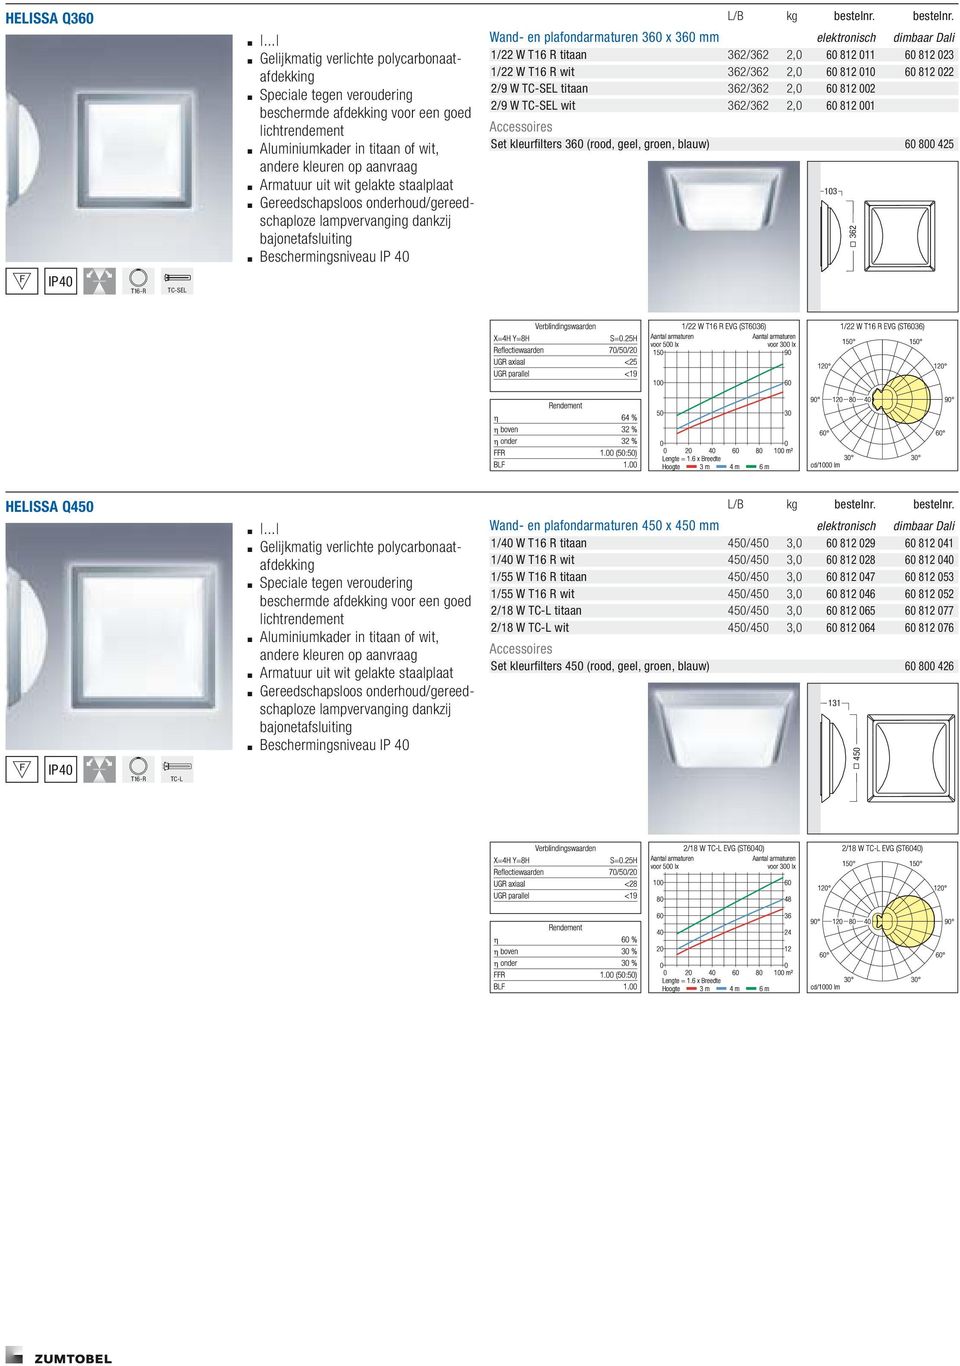 wit gelakte staalplaat Gereedschapsloos onderhoud/gereedschaploze lampvervanging dankzij bajonetafsluiting Beschermingsniveau IP 40 L / B k g bestelnr.